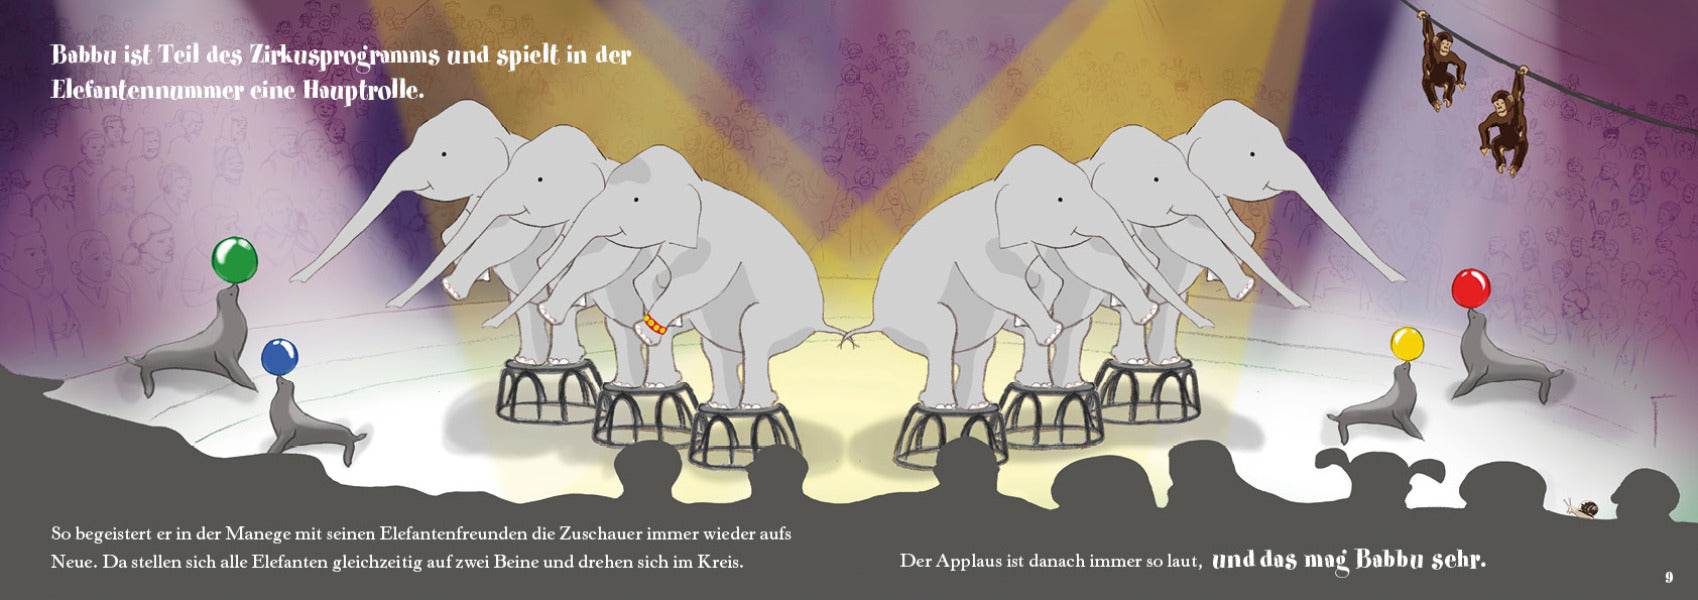 Babbu der kleine ausreisser Buch Geschichte Zürich elefant